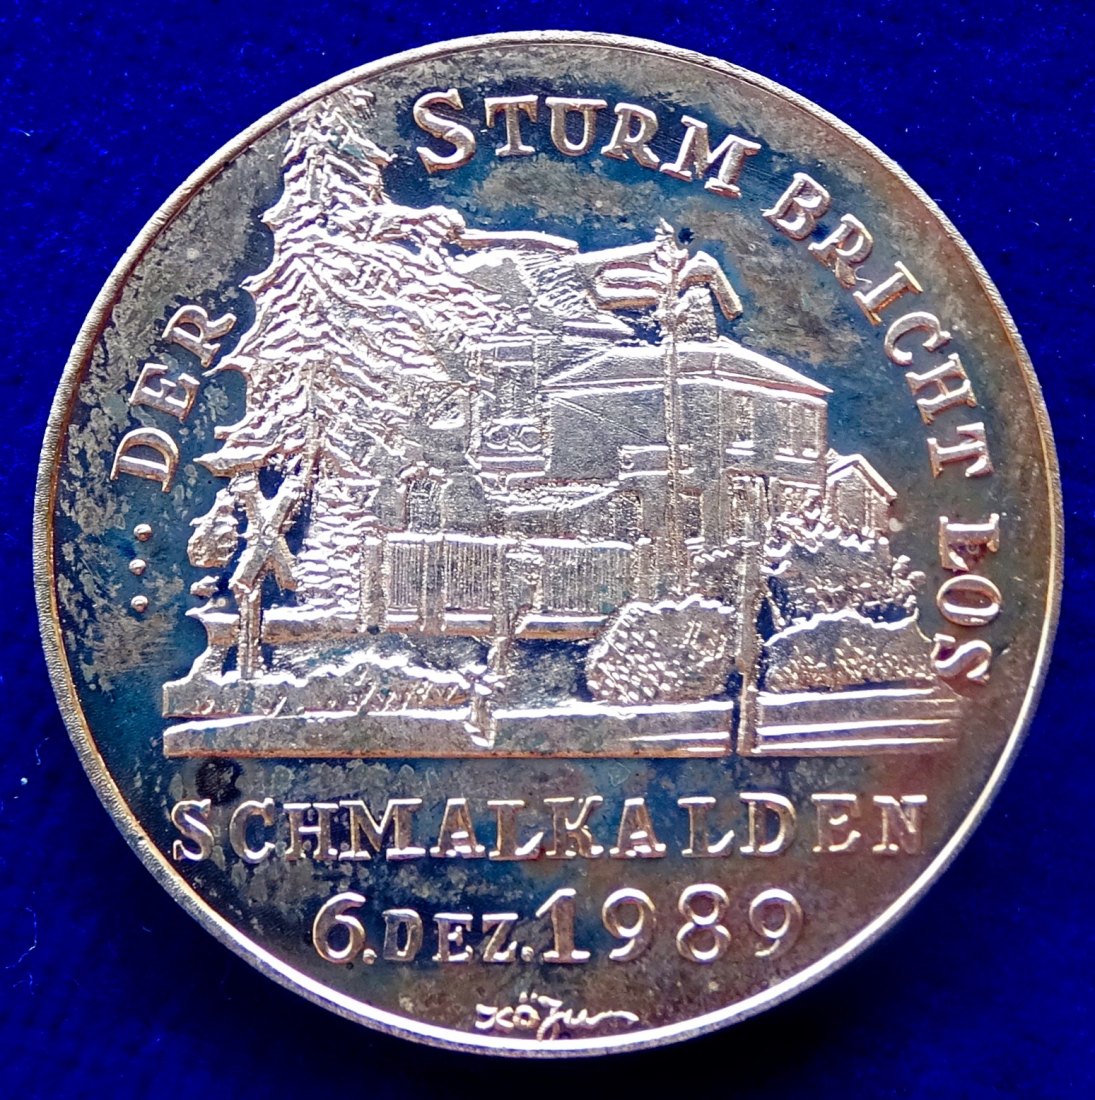  Schmalkalden, DDR, Sturm des Volkes gegen die Stasi am 6. 12. 1989 Medaille von König.   